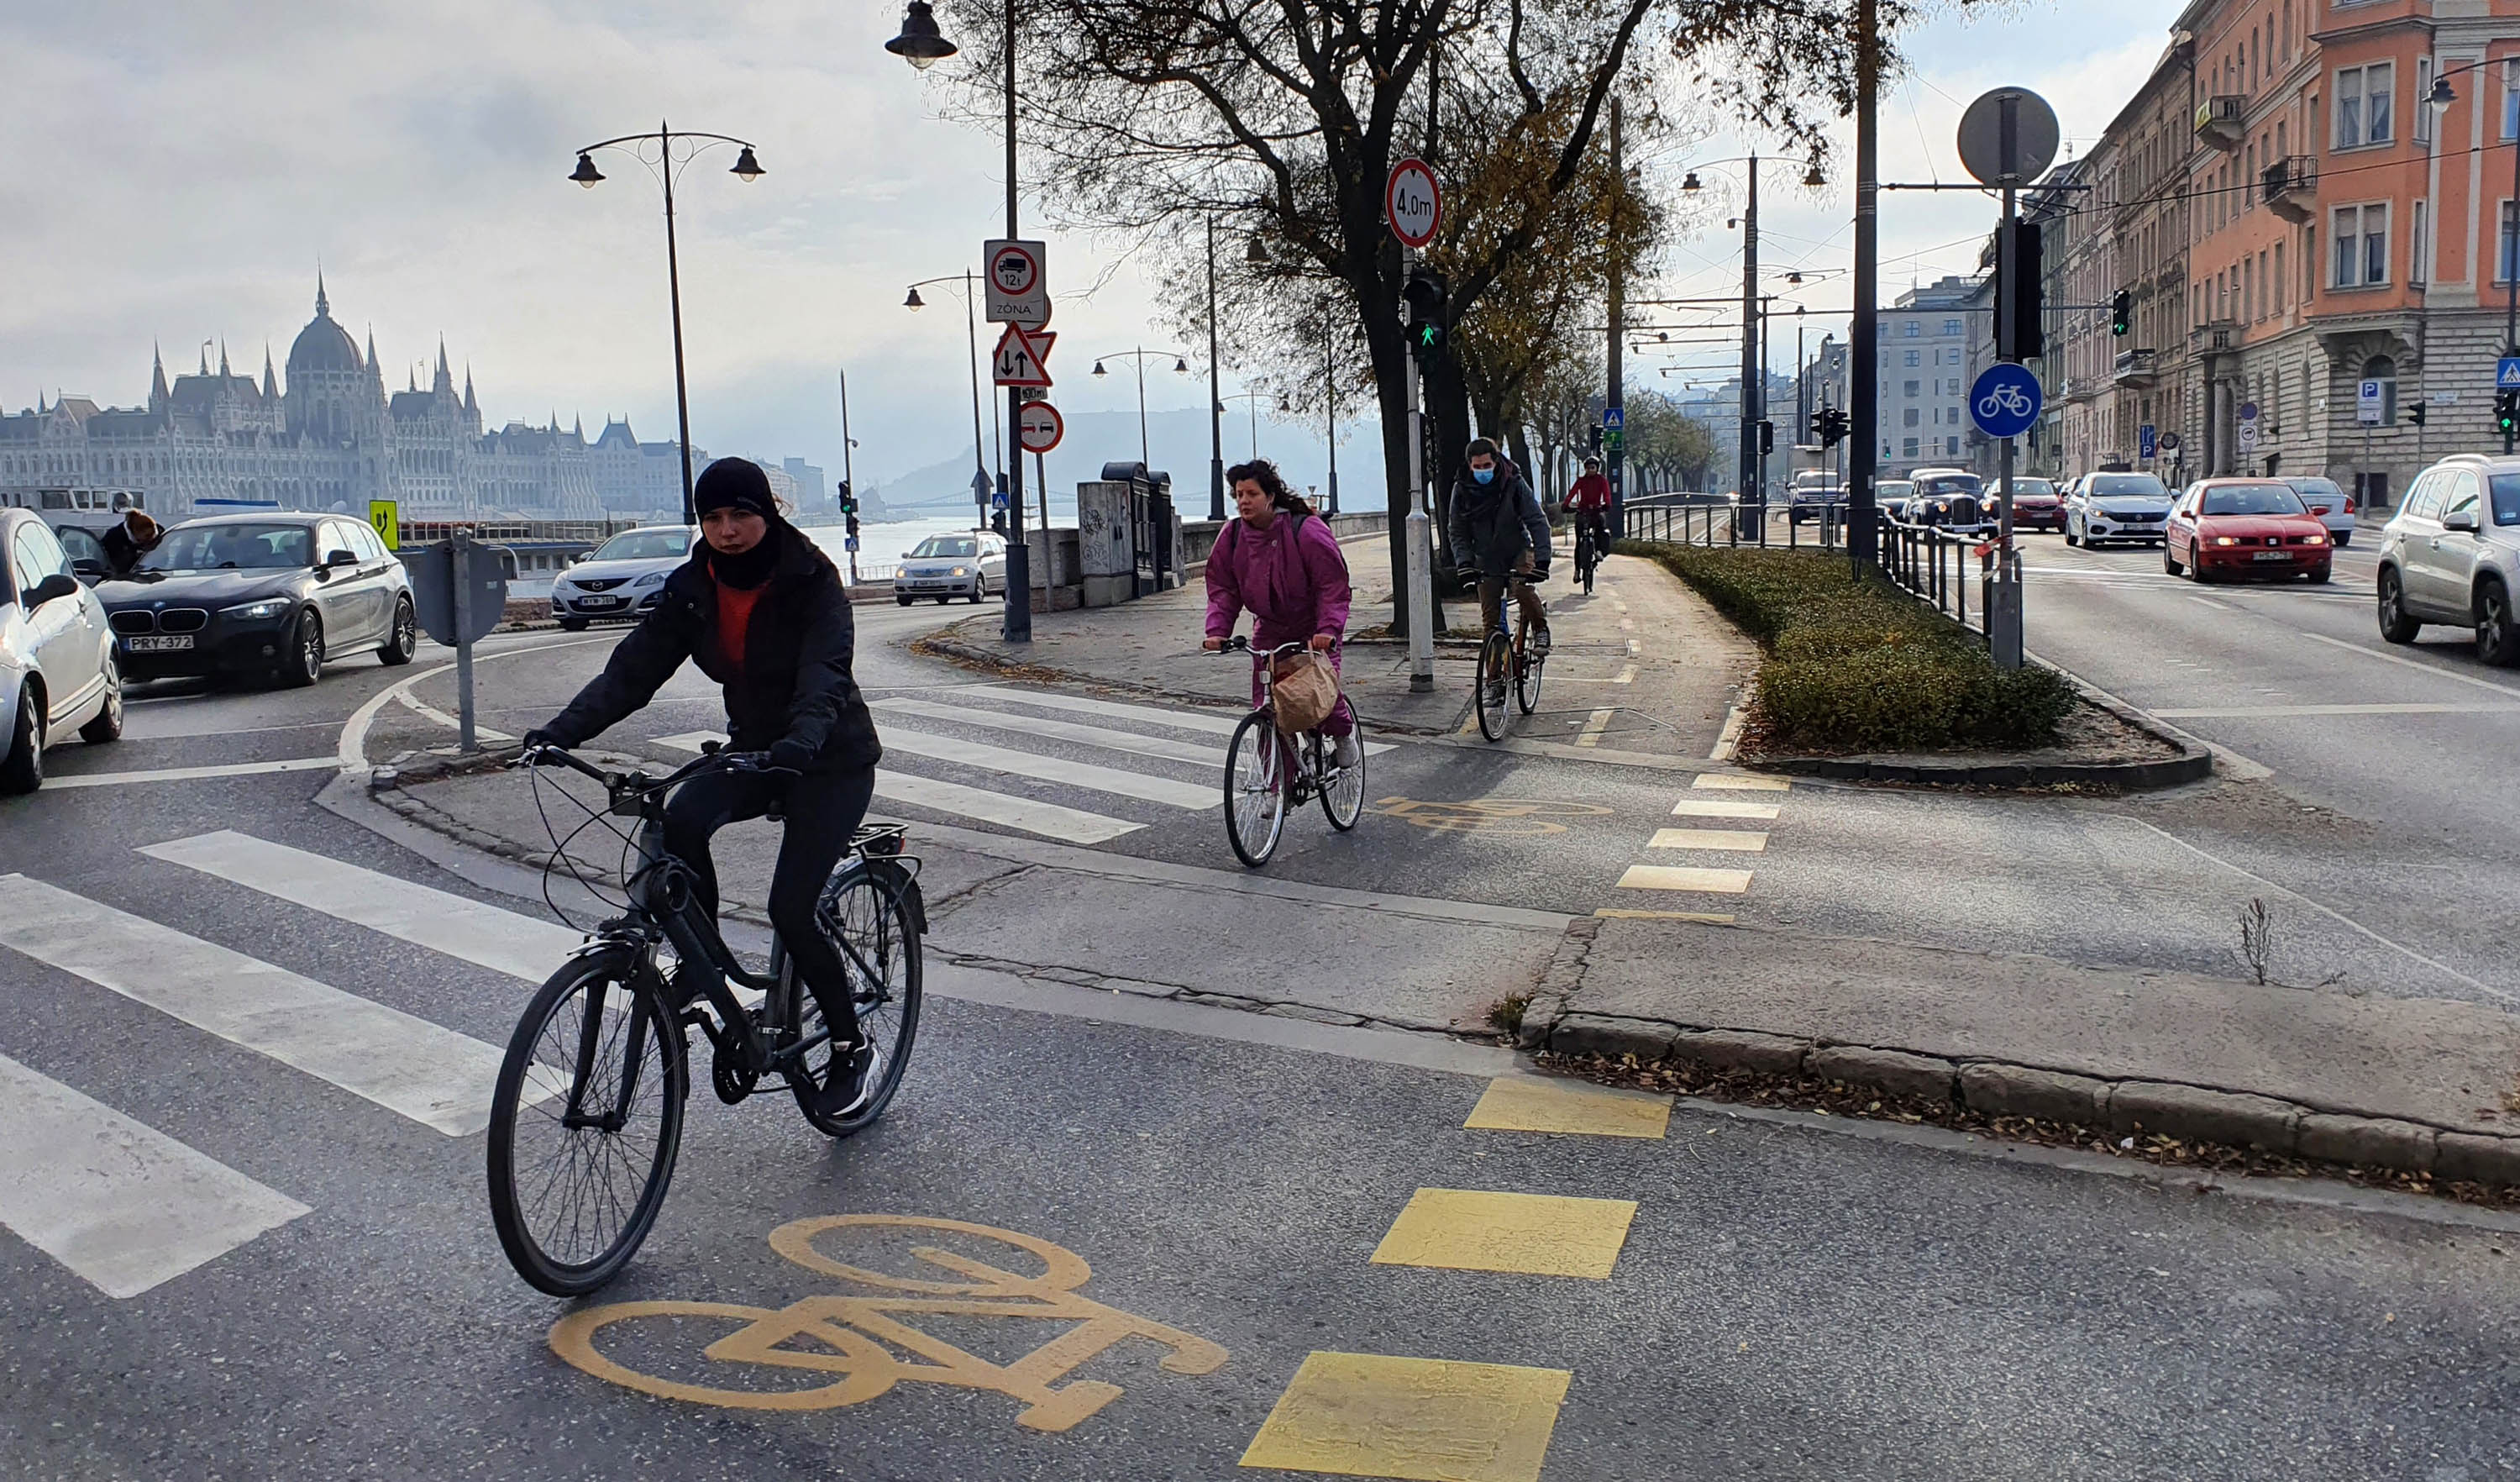 15%-kal több kerékpározót mértek Budapesten 2020-ban, decemberben 61%-kal többet, mint egy éve